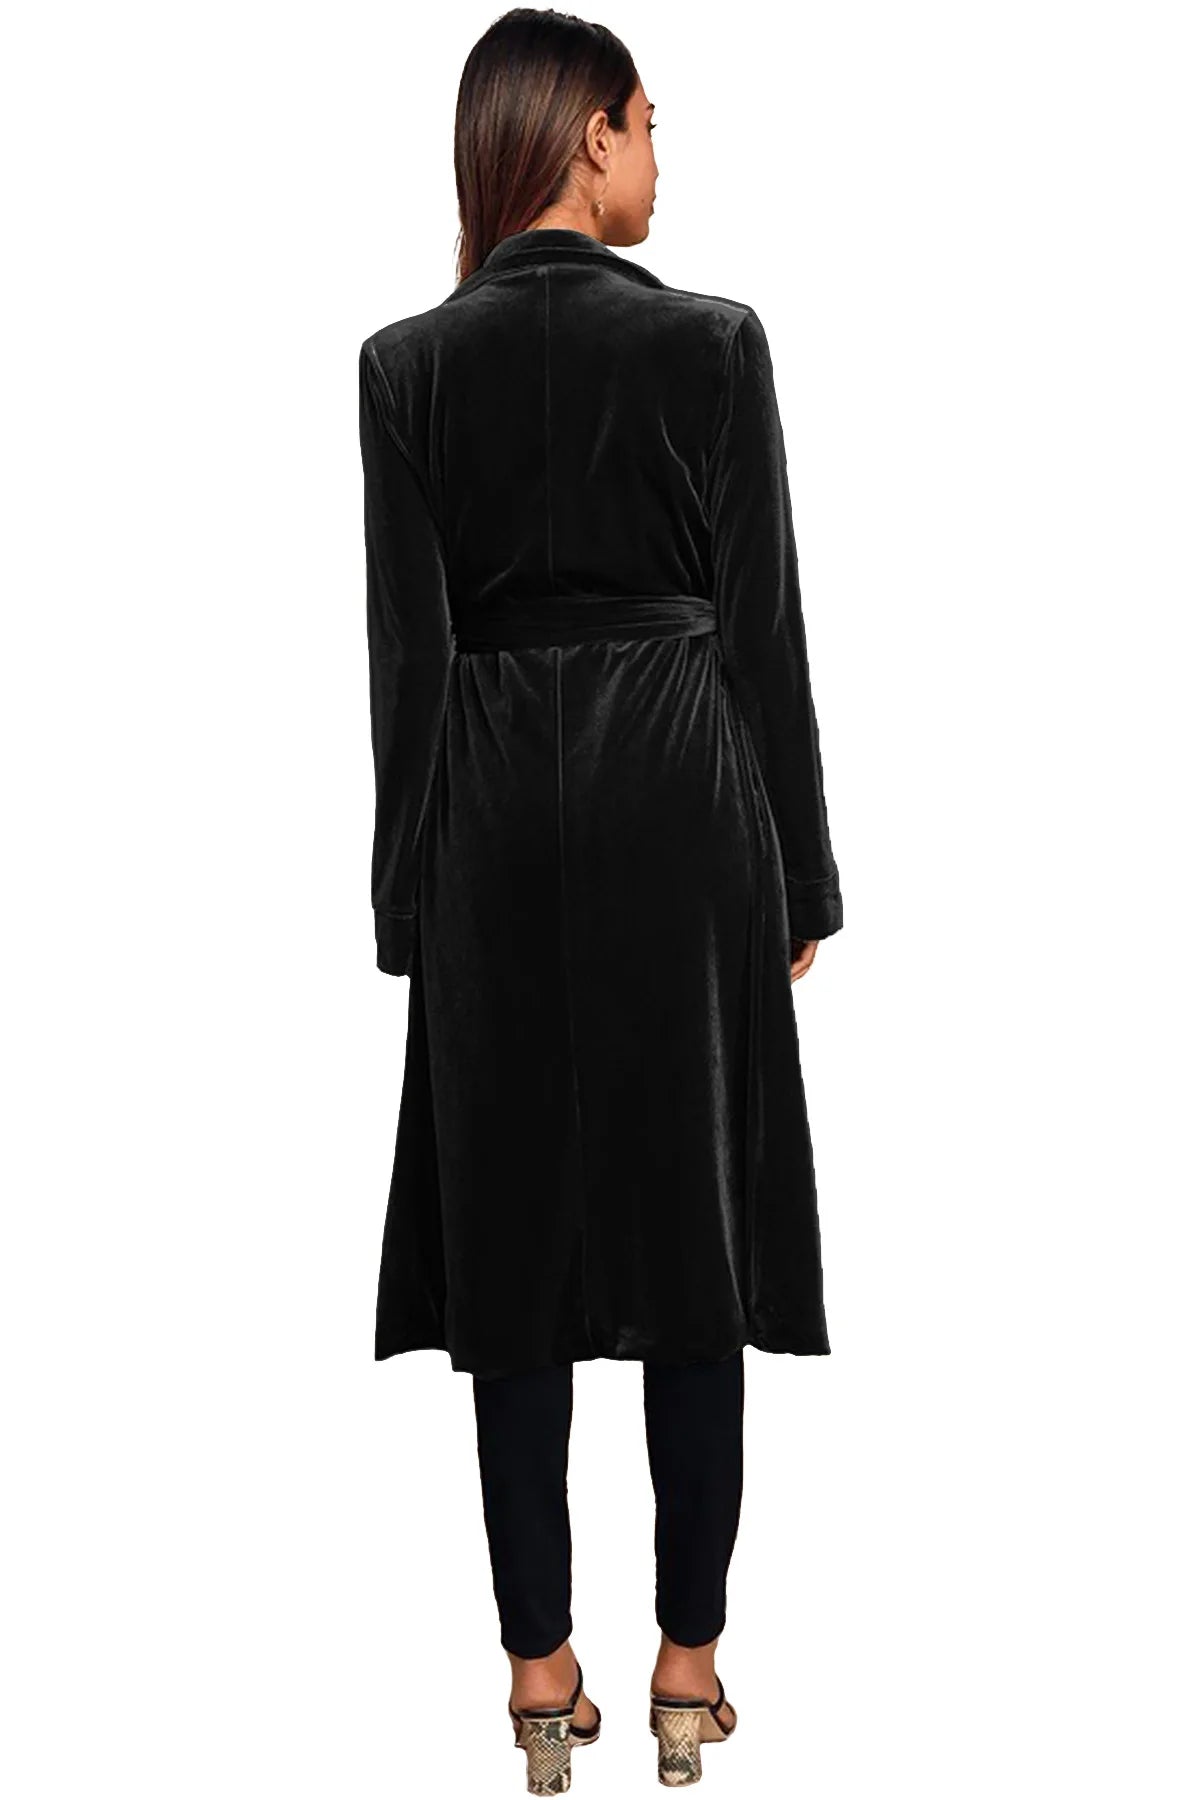 Date Night Elegance Velvet Velour Lapel Coat with Pockets Velvet Coats - Chuzko Women Clothing